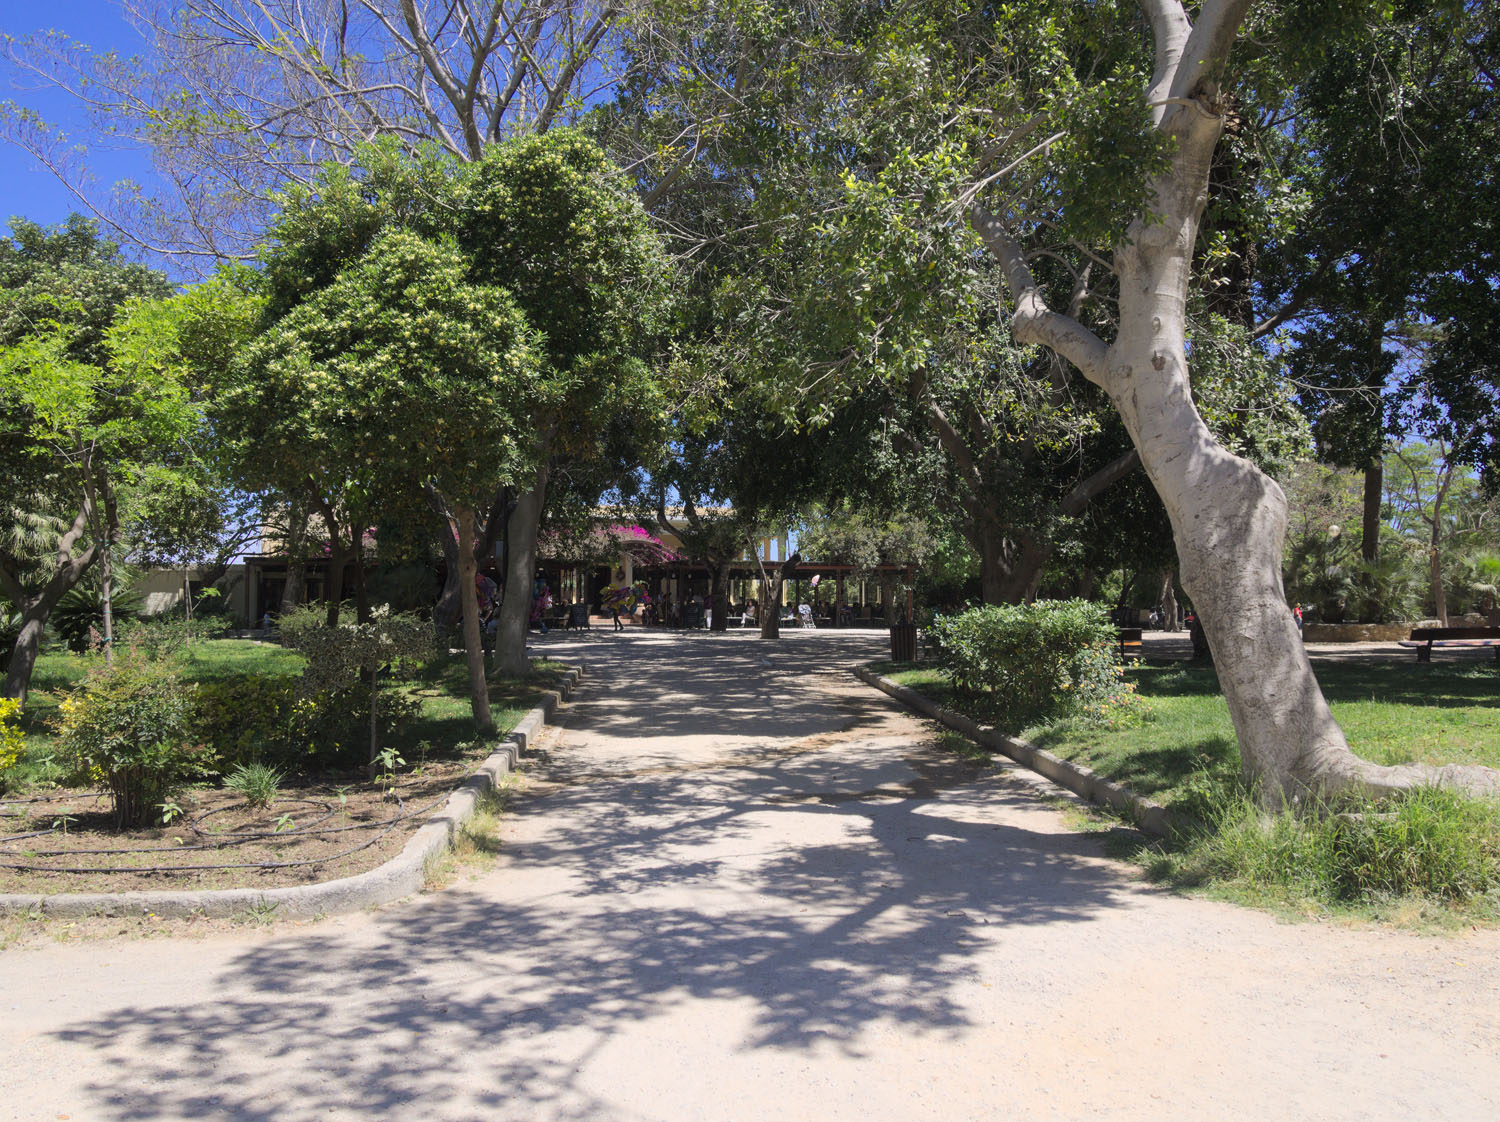 Municipal Garden of Chania